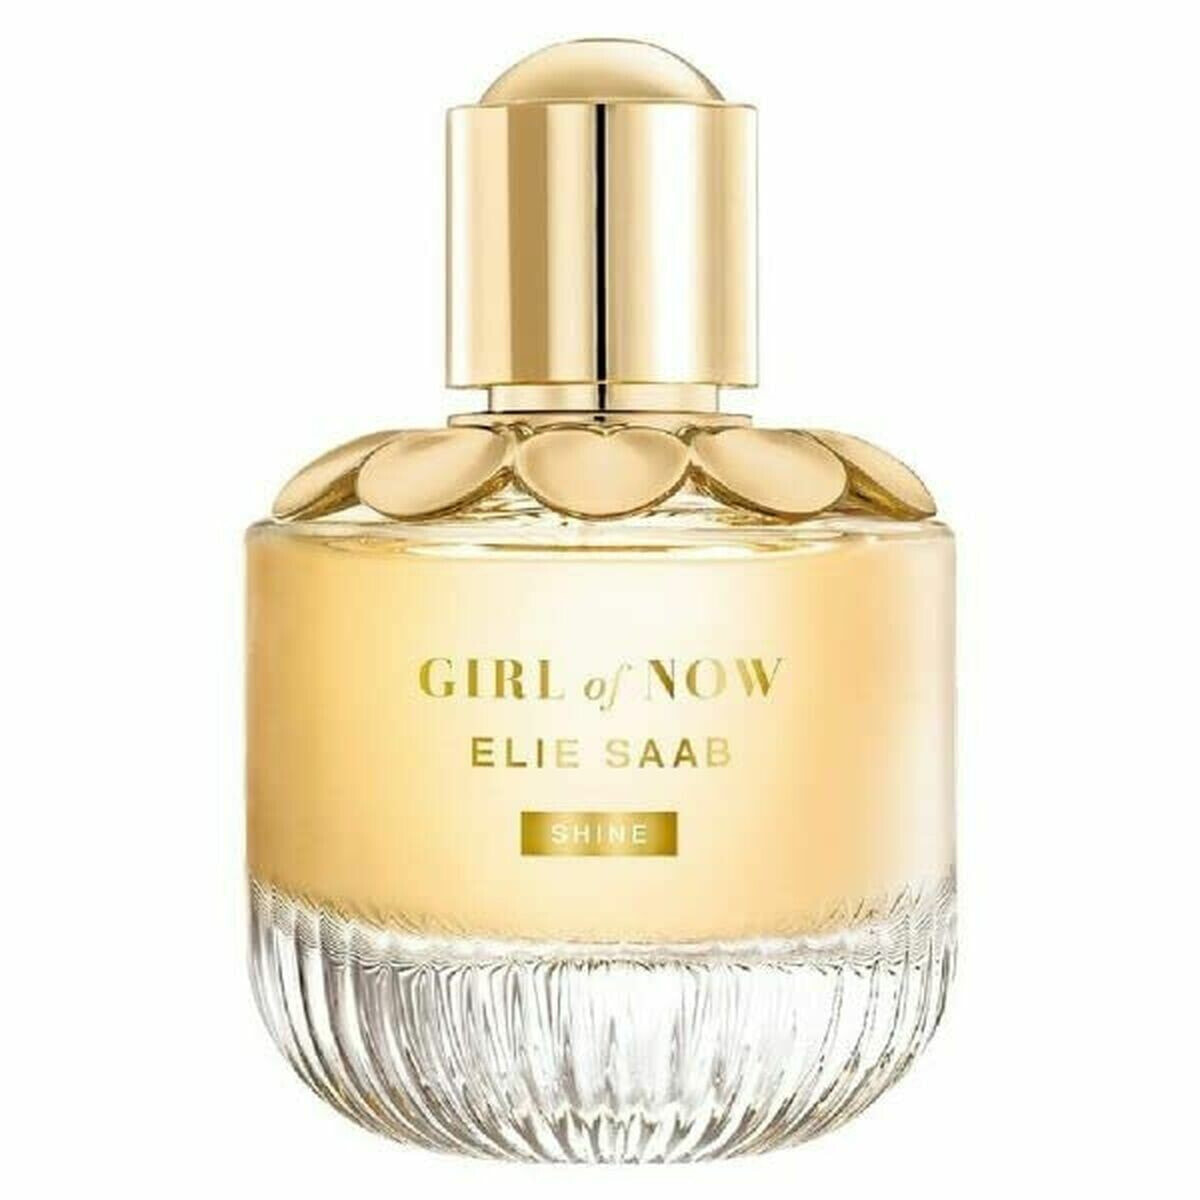 Женская парфюмерия Elie Saab EDP Girl Of Now Shine 50 ml